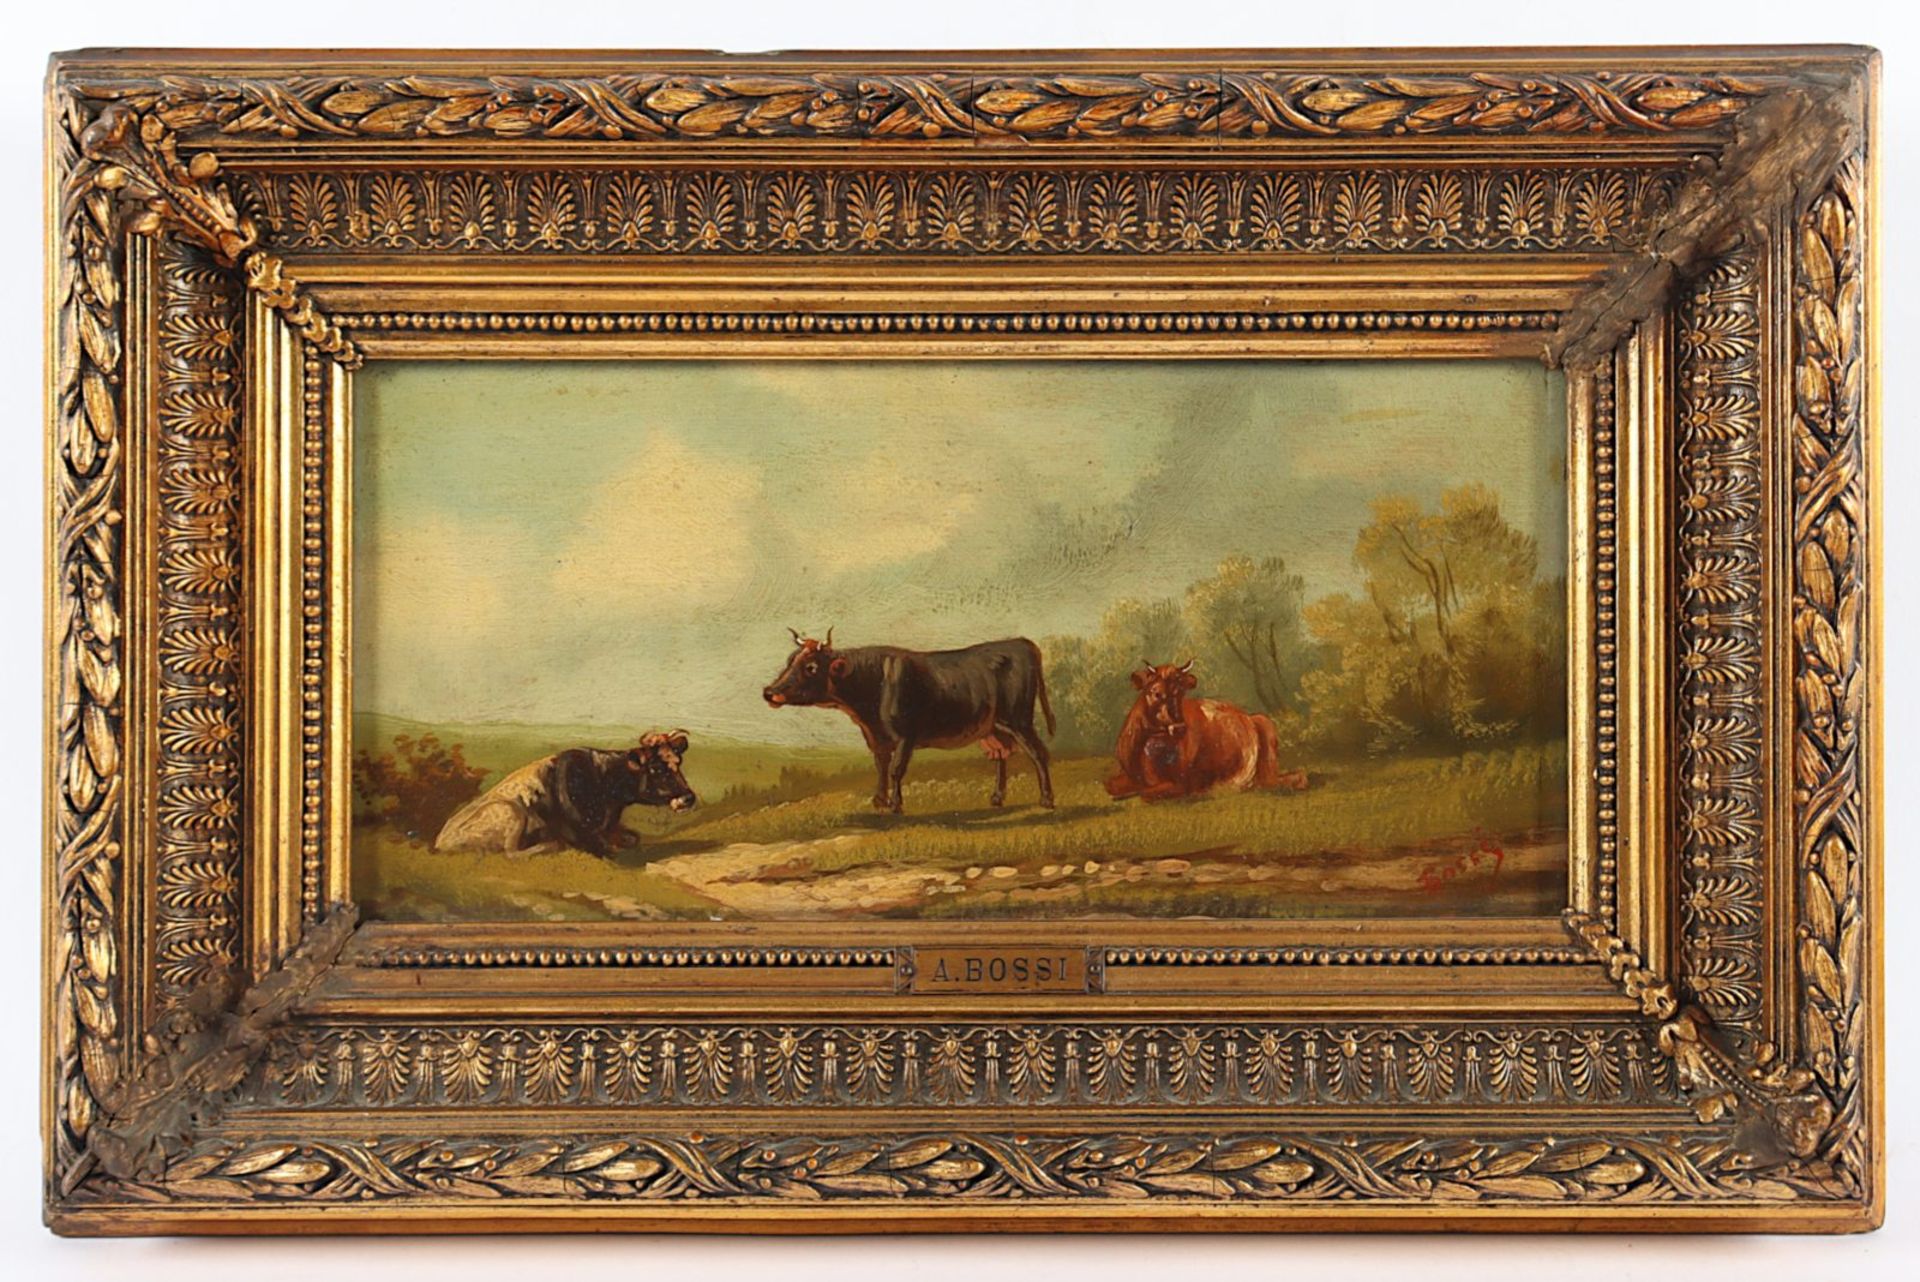 KAUFMANN, Karl (1843-1905), zugeschrieben, "Landschaft mit Kühen", signiert "Bossi", R.